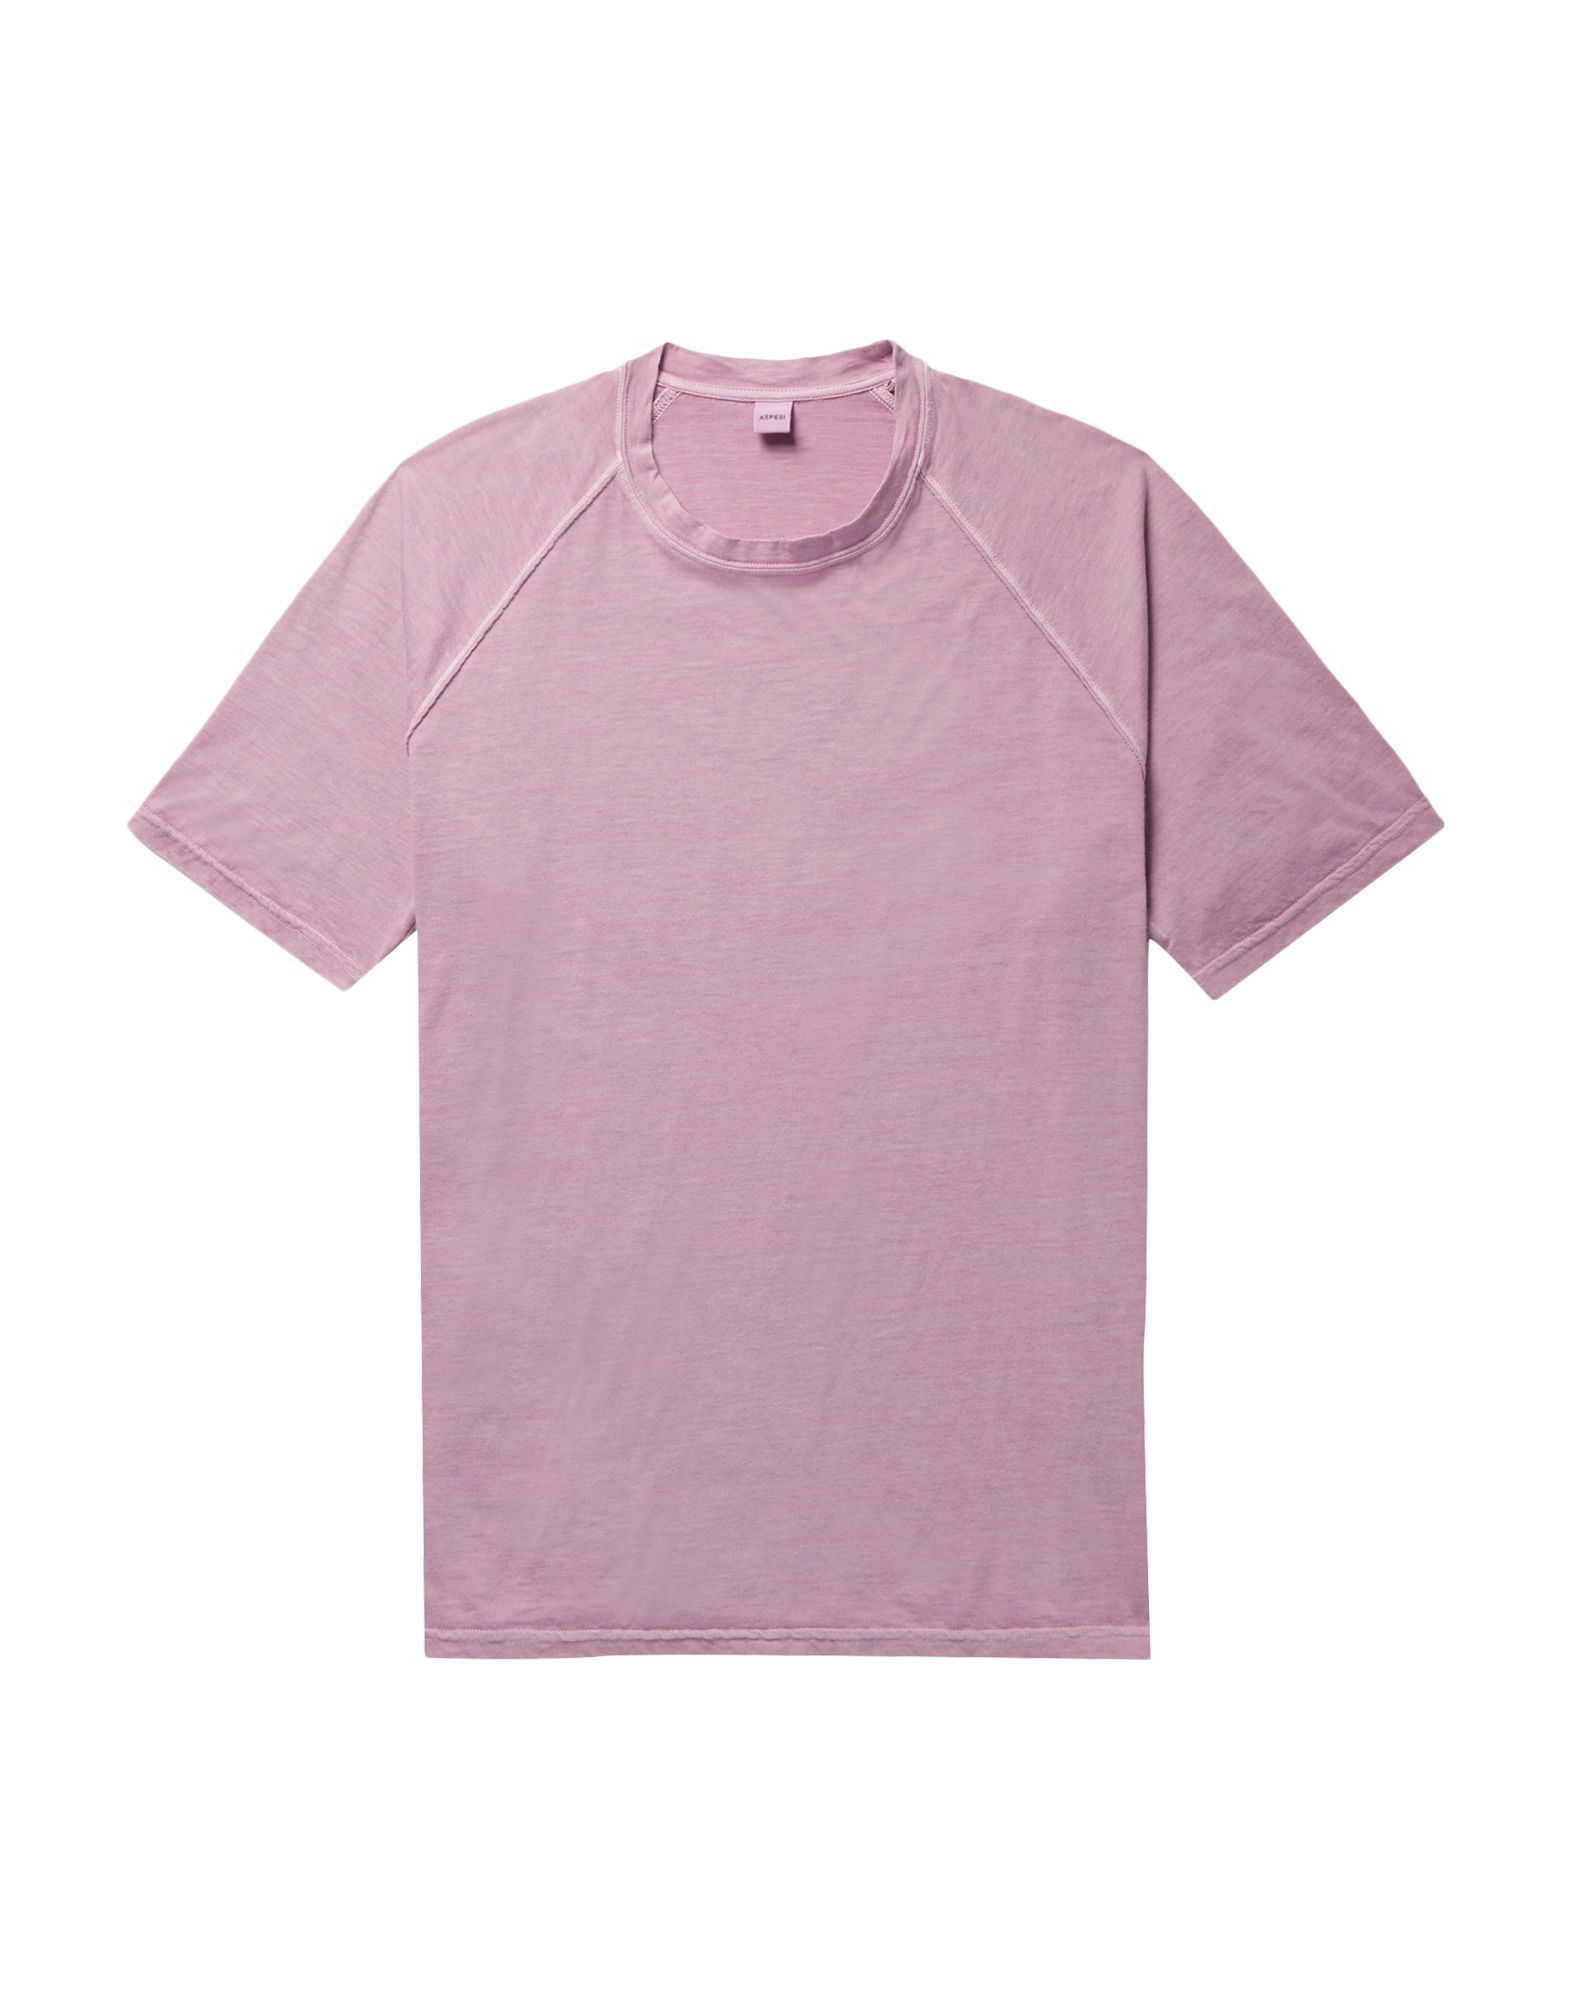 ピンクtシャツ コーデ特集 定番とはひと味違う色味でこなれ感を演出した着こなし アイテム紹介 メンズファッションメディア Otokomaeotokomae 男前研究所